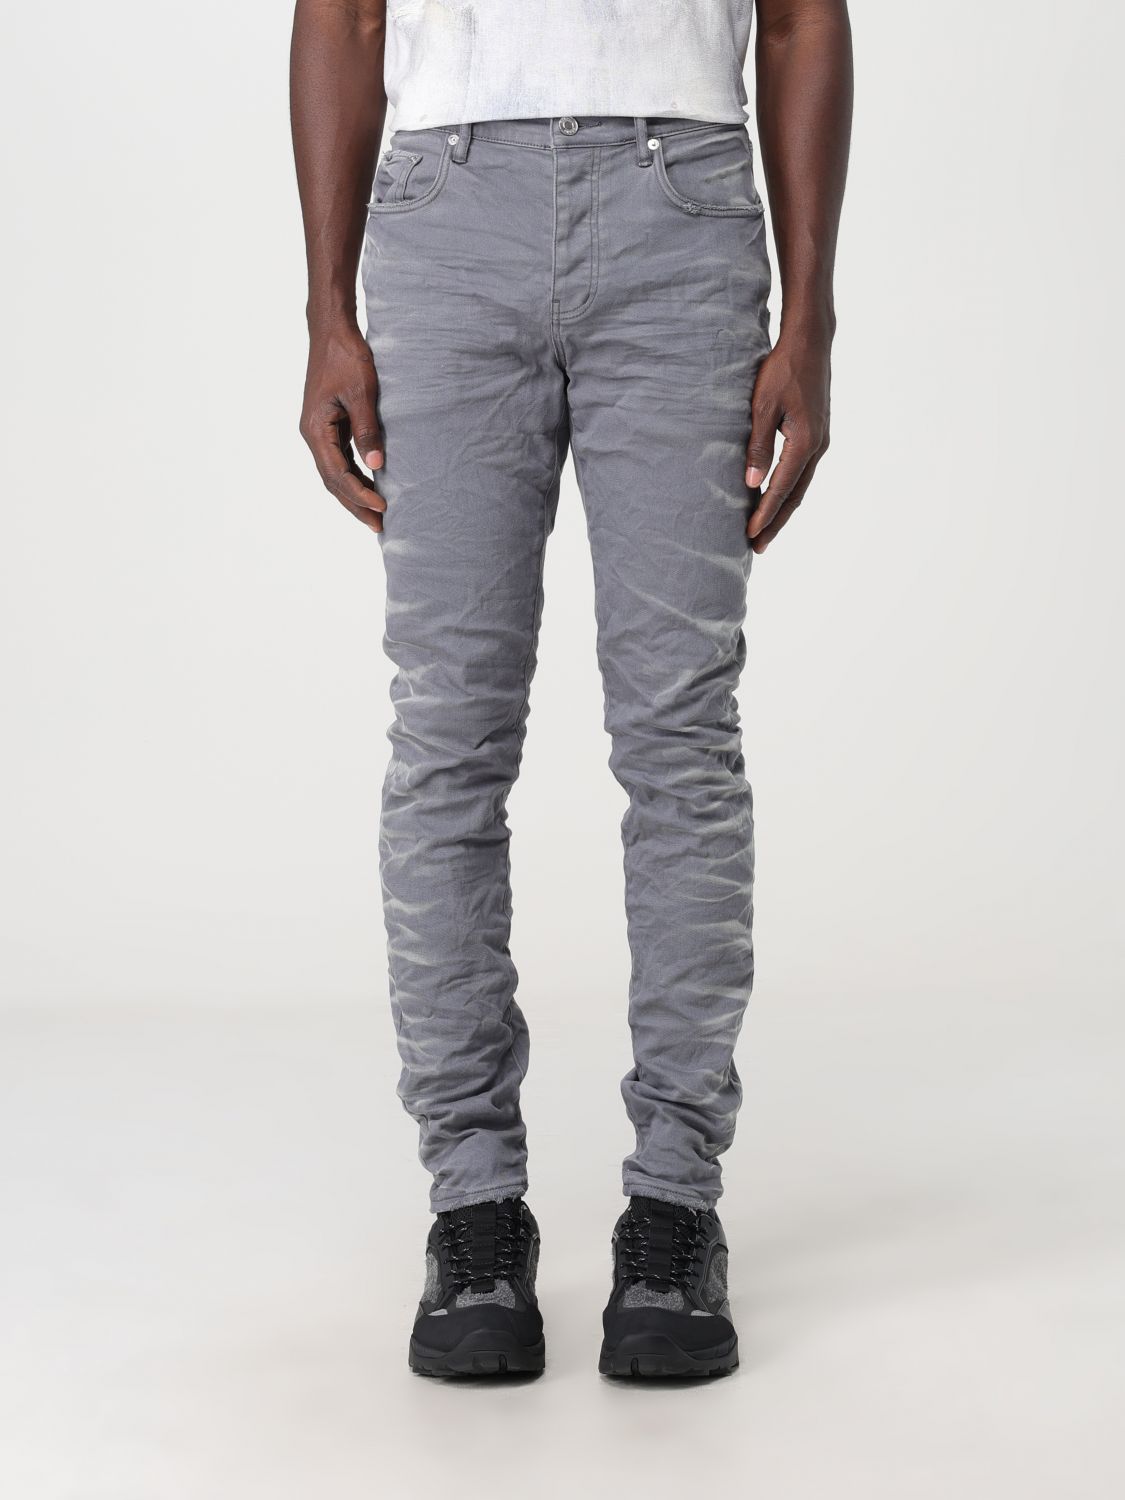 Purple Brand Jeans Men Color Grey